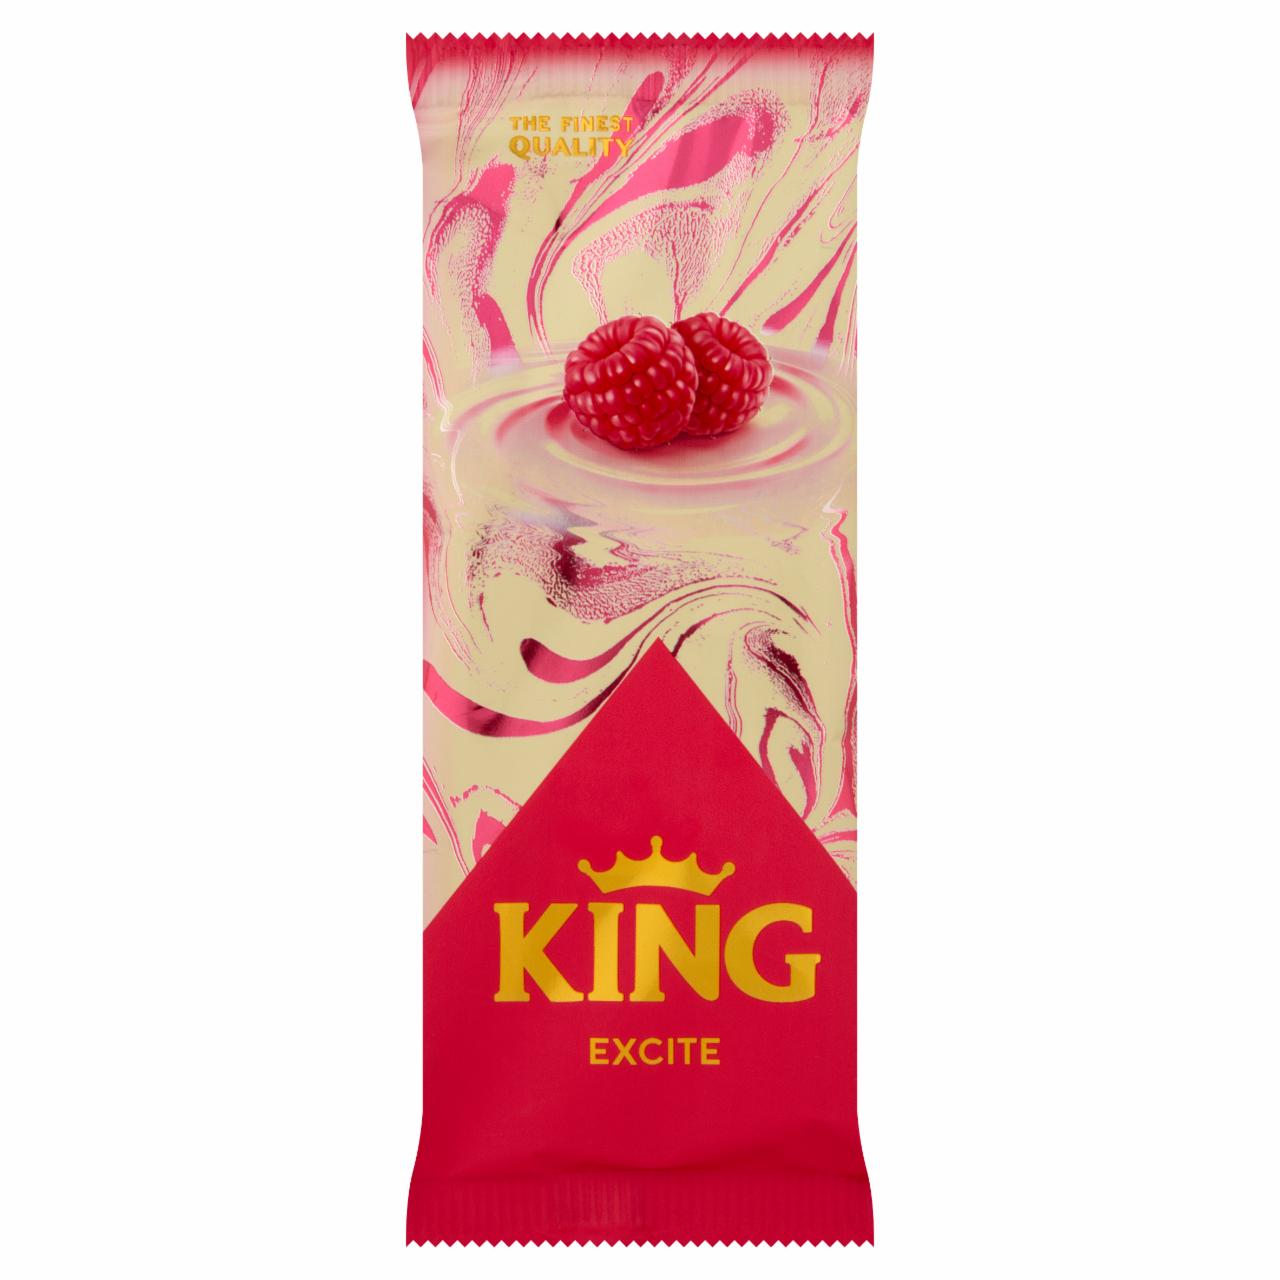 Képek - King Excite panna cotta ízű jégkrém málnás töltelékkel fehér csokoládé bevonattal 90 ml